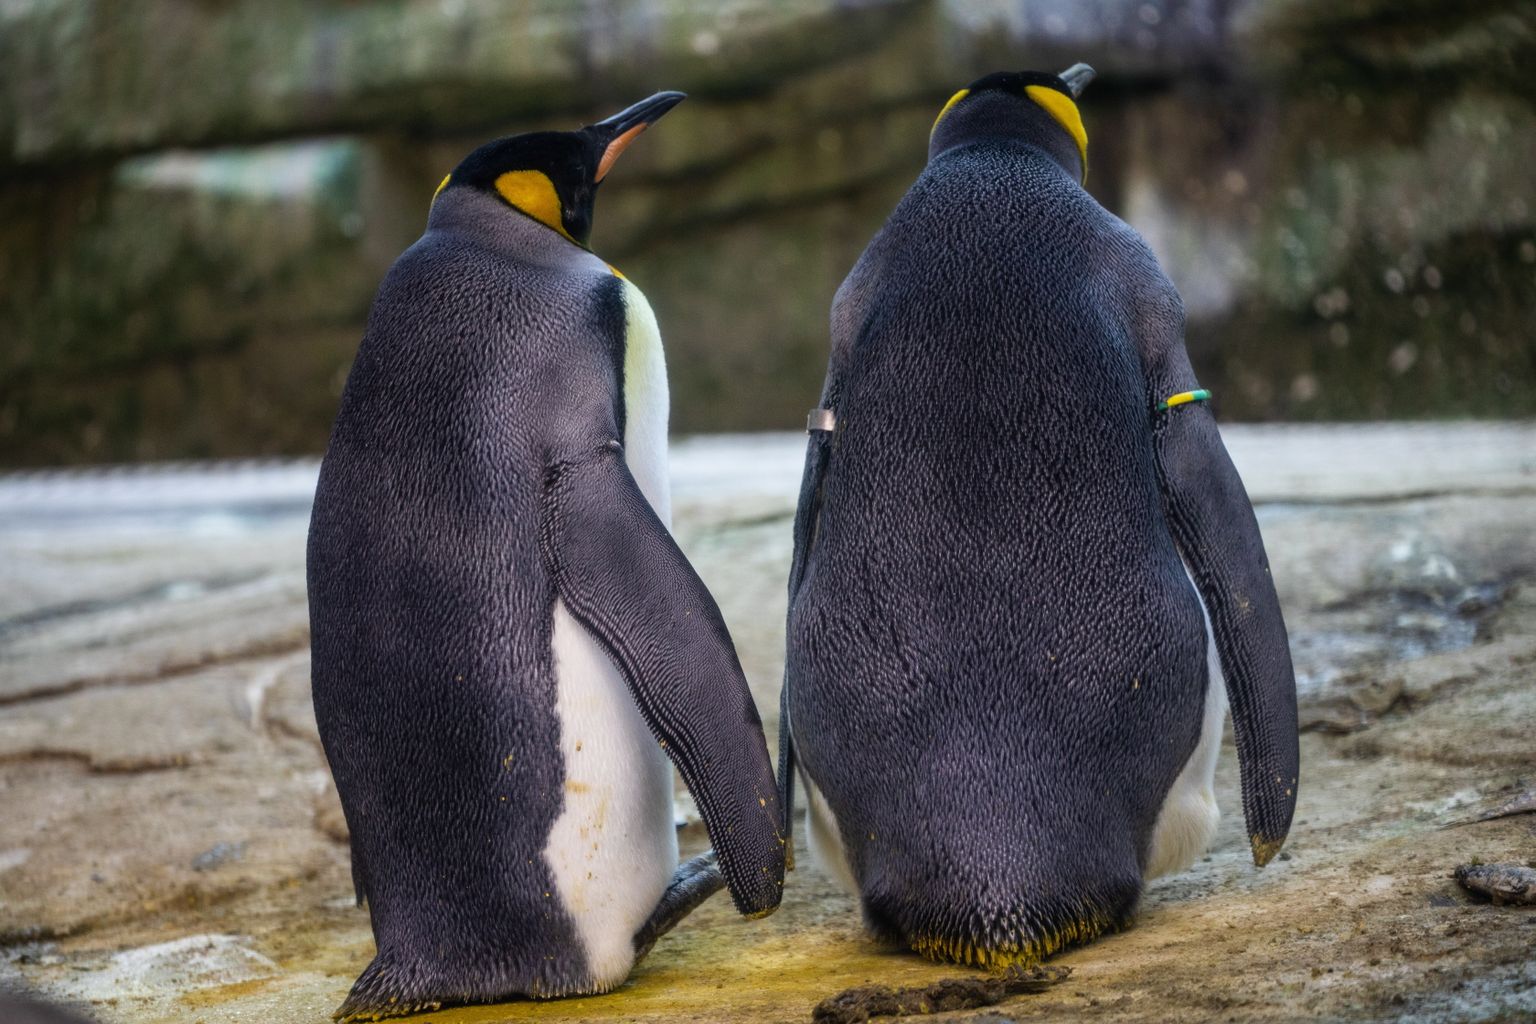 Ka Berliini loomaaias on samasoolisi pingviinipaare edukalt tibude kasvatamiseks kasutatud.